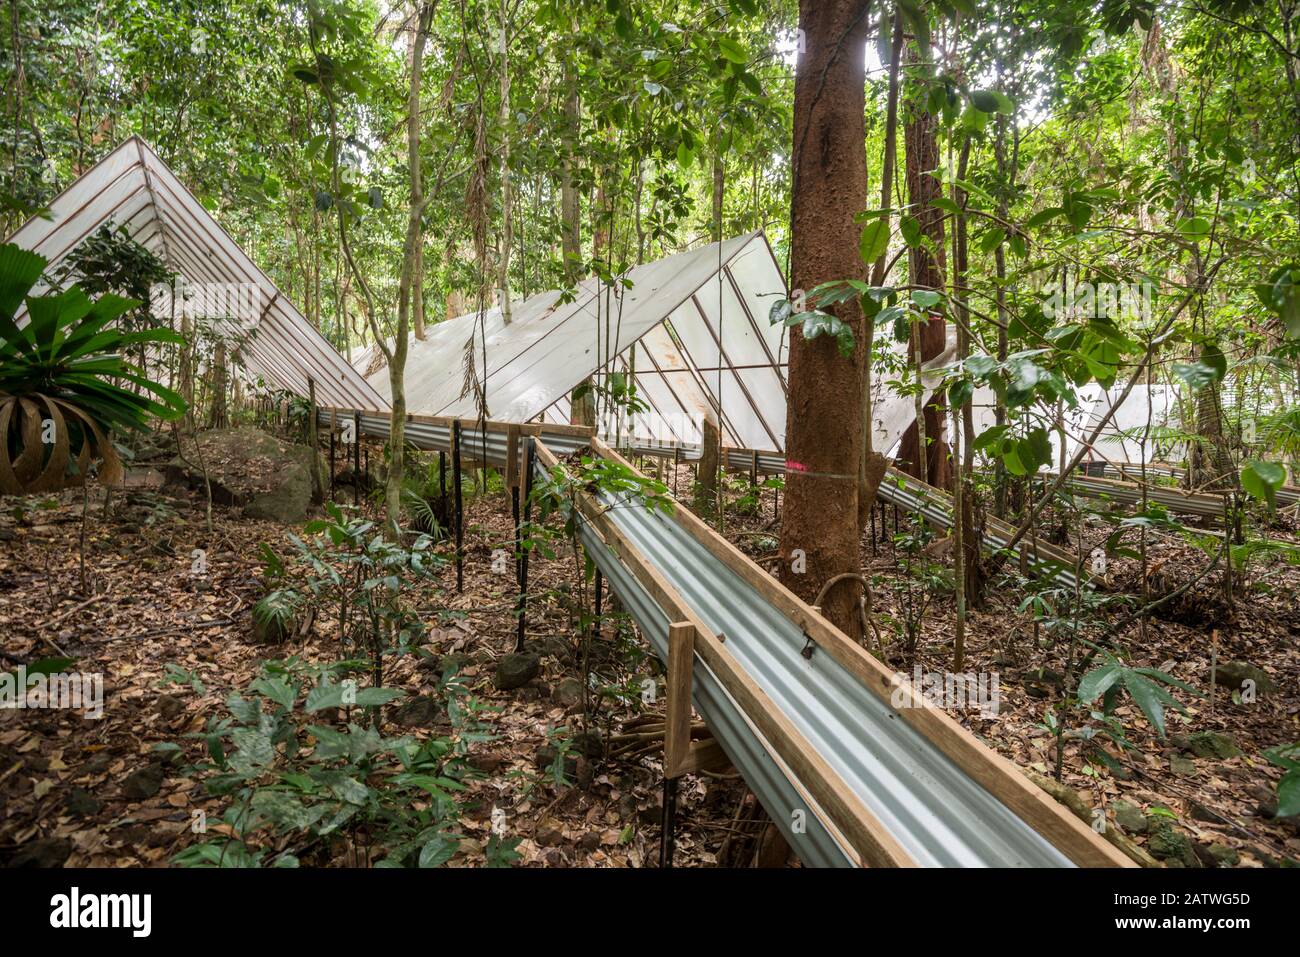 Balbuzie per reindirizzare l'acqua all'Esperimento Della Siccità di Daintree, dove le piante della foresta pluviale sono cresciute sotto copertura per vedere come rispondono alla siccità. Daintree Rainforest Observatory, Queensland Settentrionale, Australia. Settembre 2015 Foto Stock